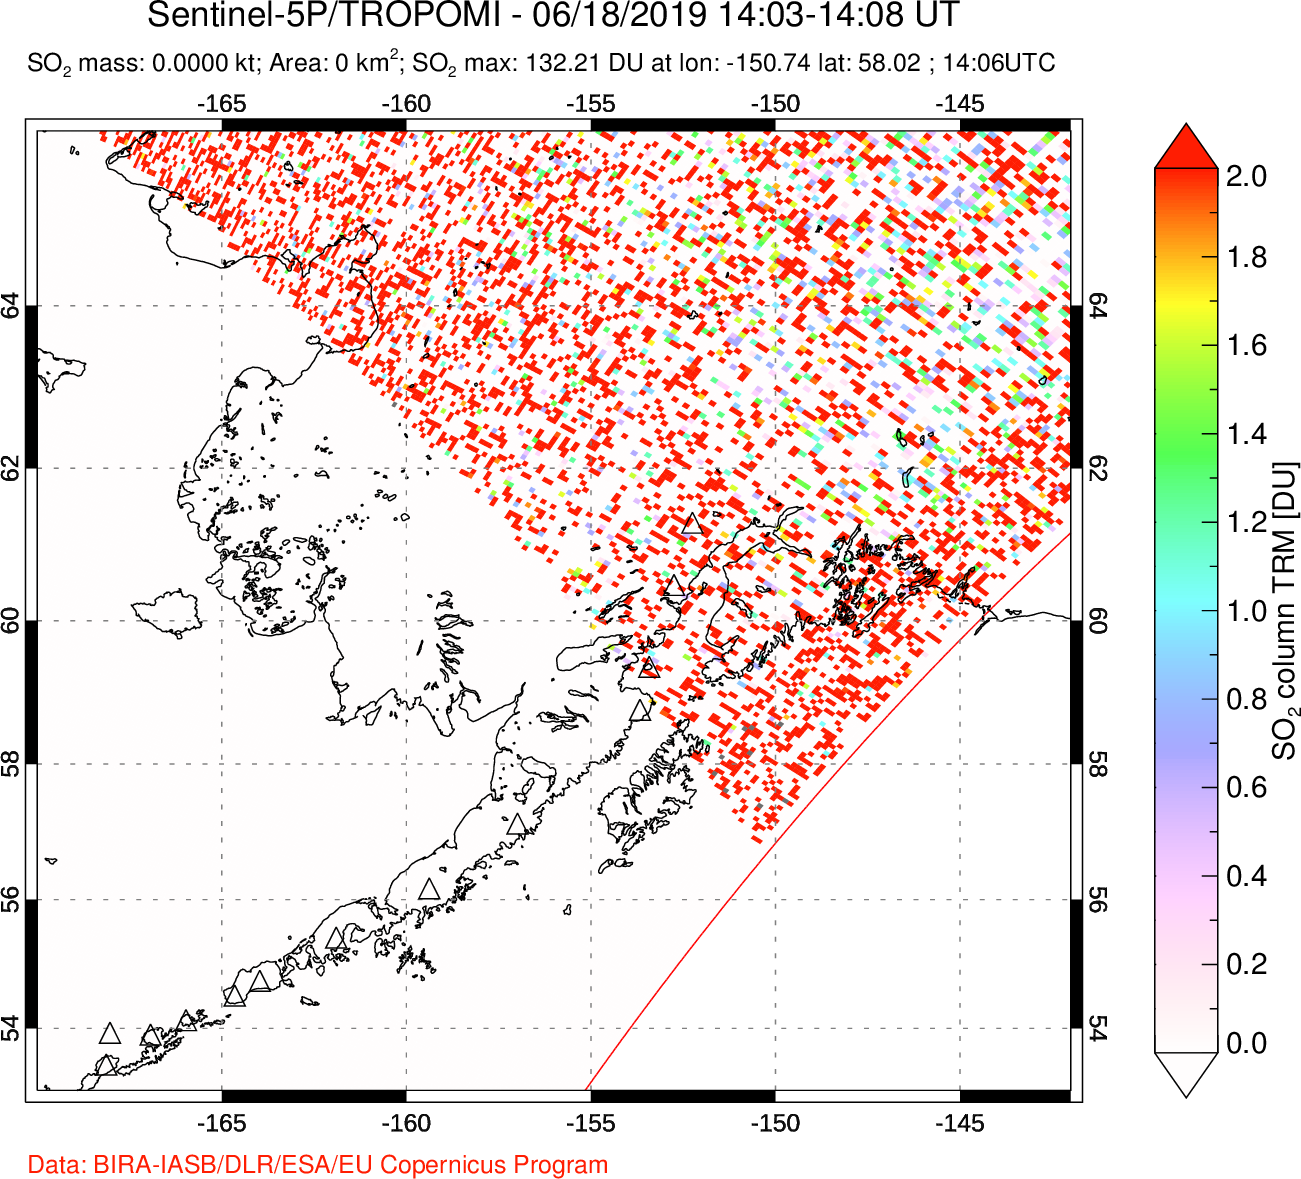 A sulfur dioxide image over Alaska, USA on Jun 18, 2019.